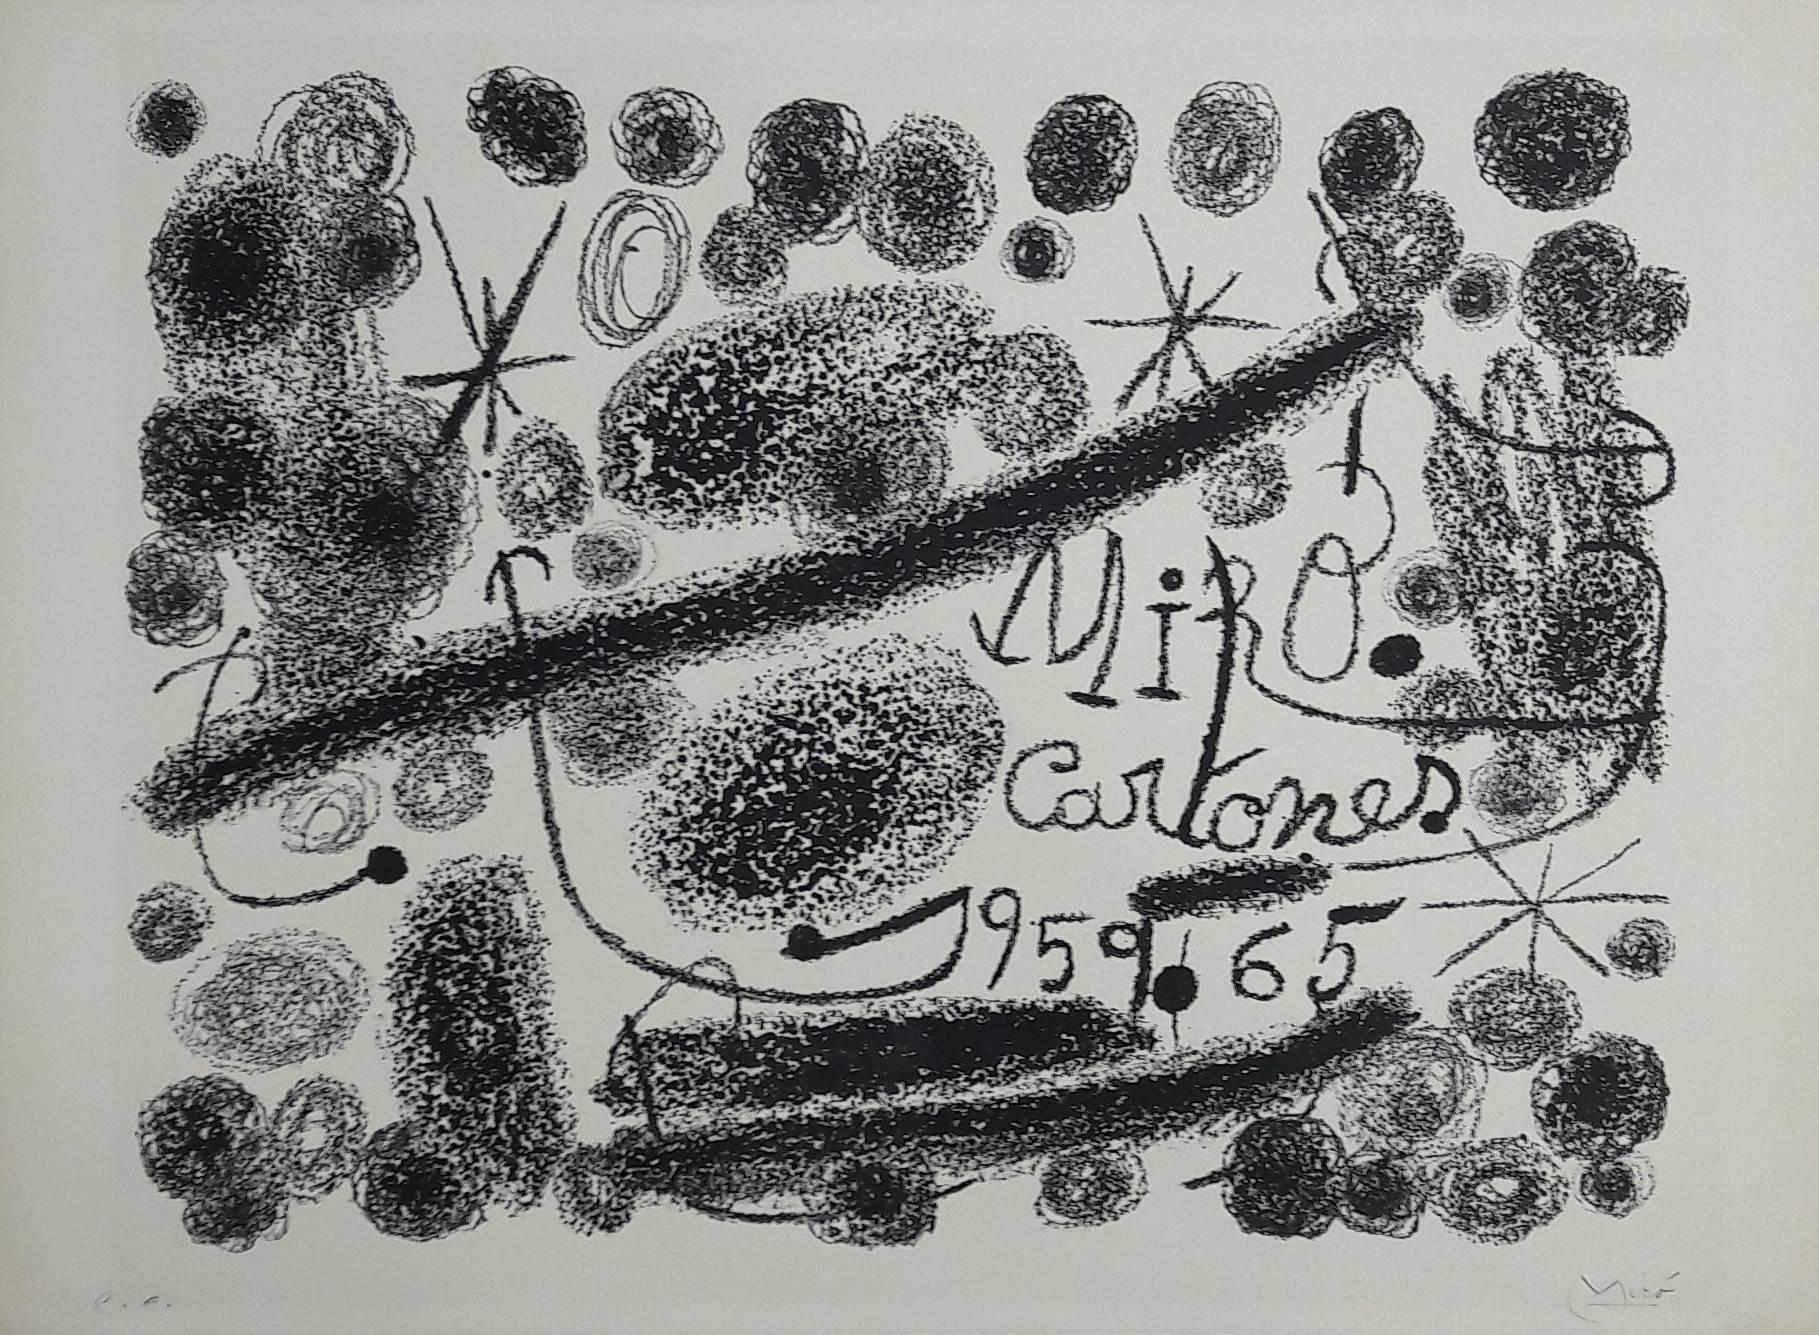 Joan Miró Abstract Print – Cartones - Original Lithograph Handsigned